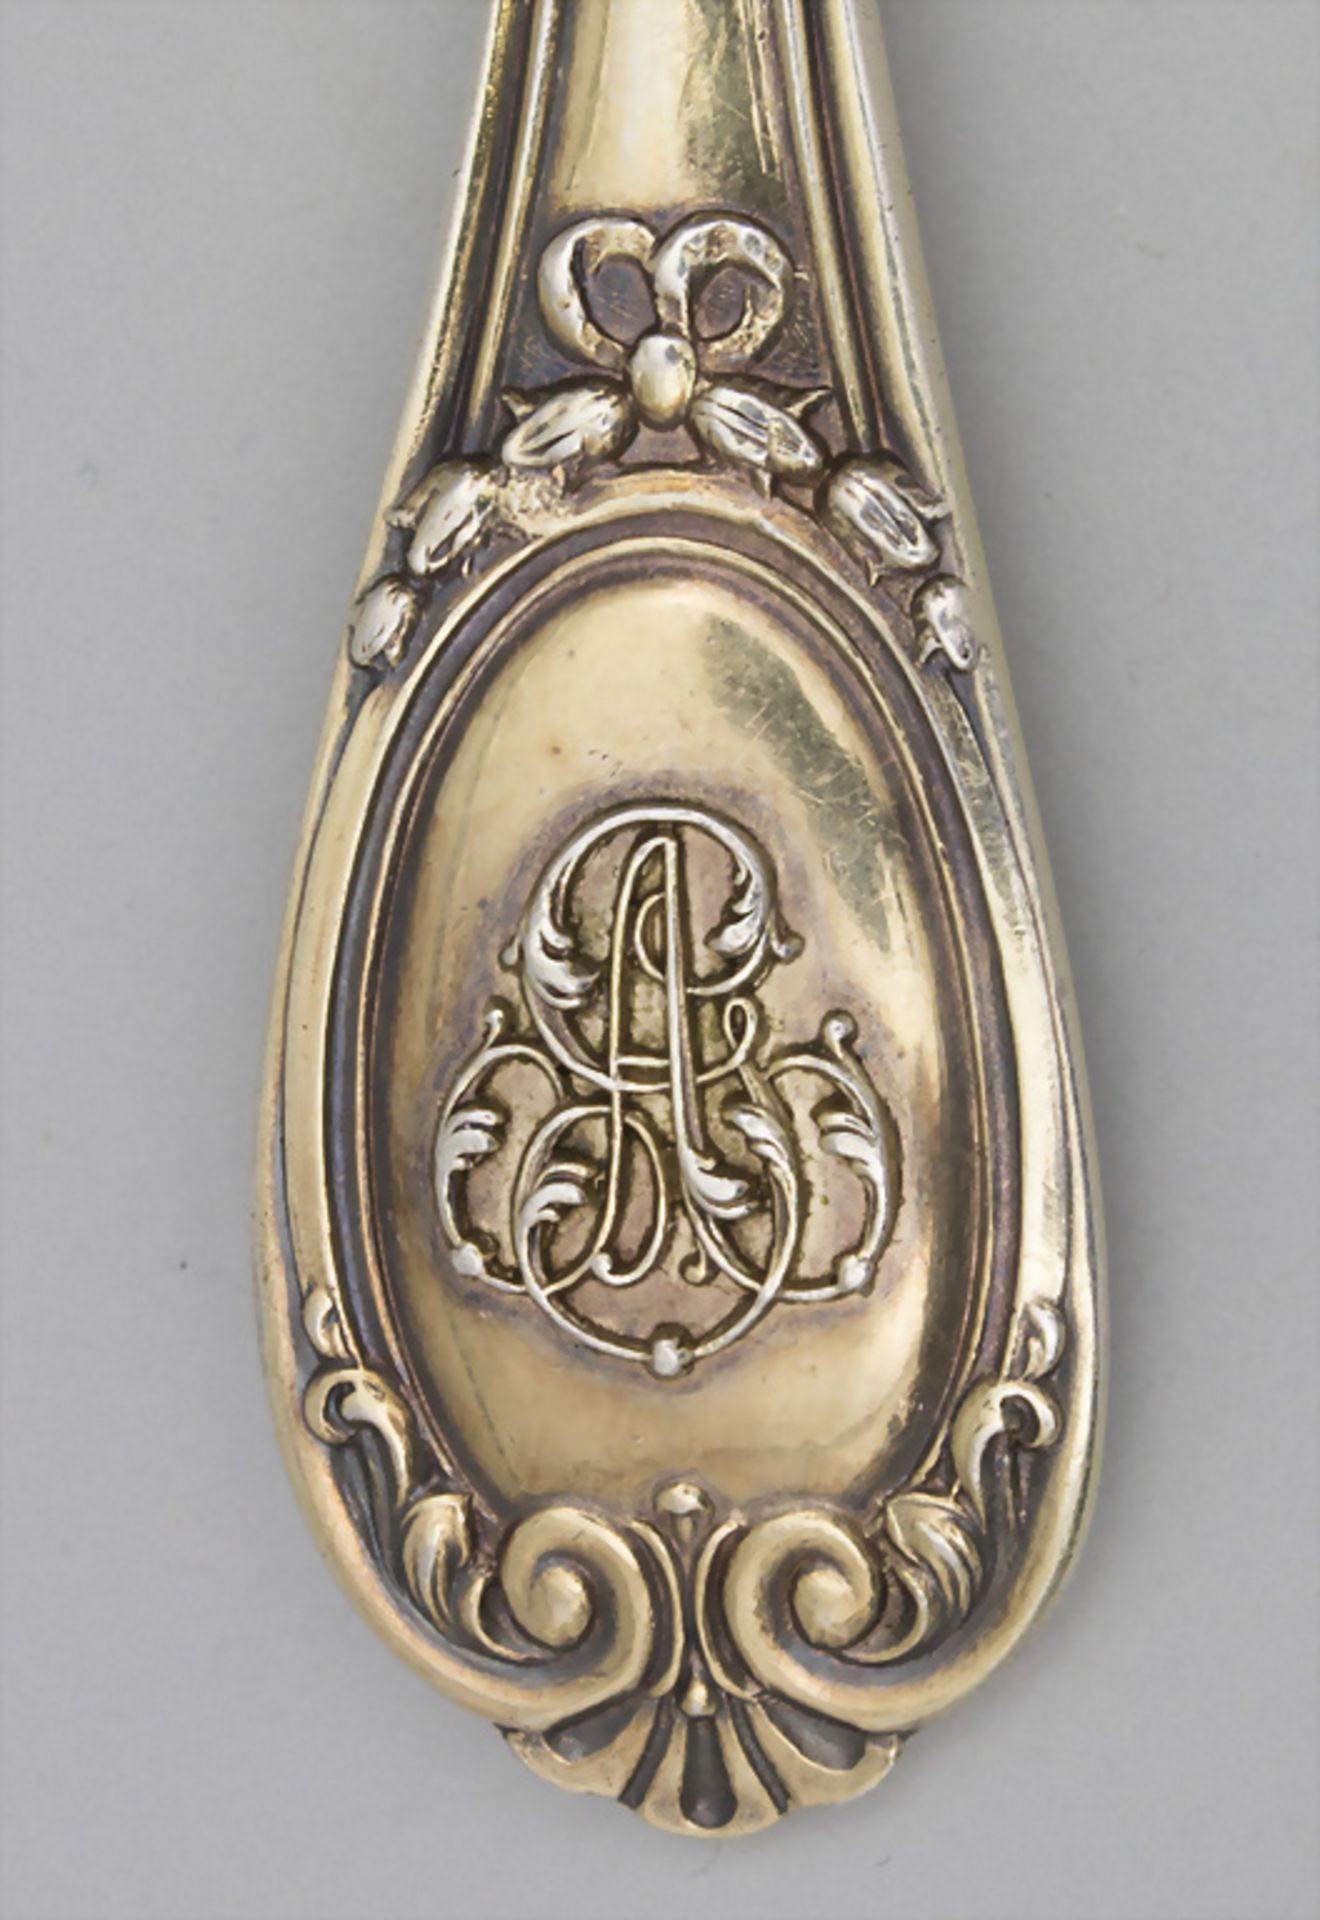 12-teiliges Silberbesteck / A 12-part silver cutlery, Veyrat, Paris, um 1900 - Bild 5 aus 8